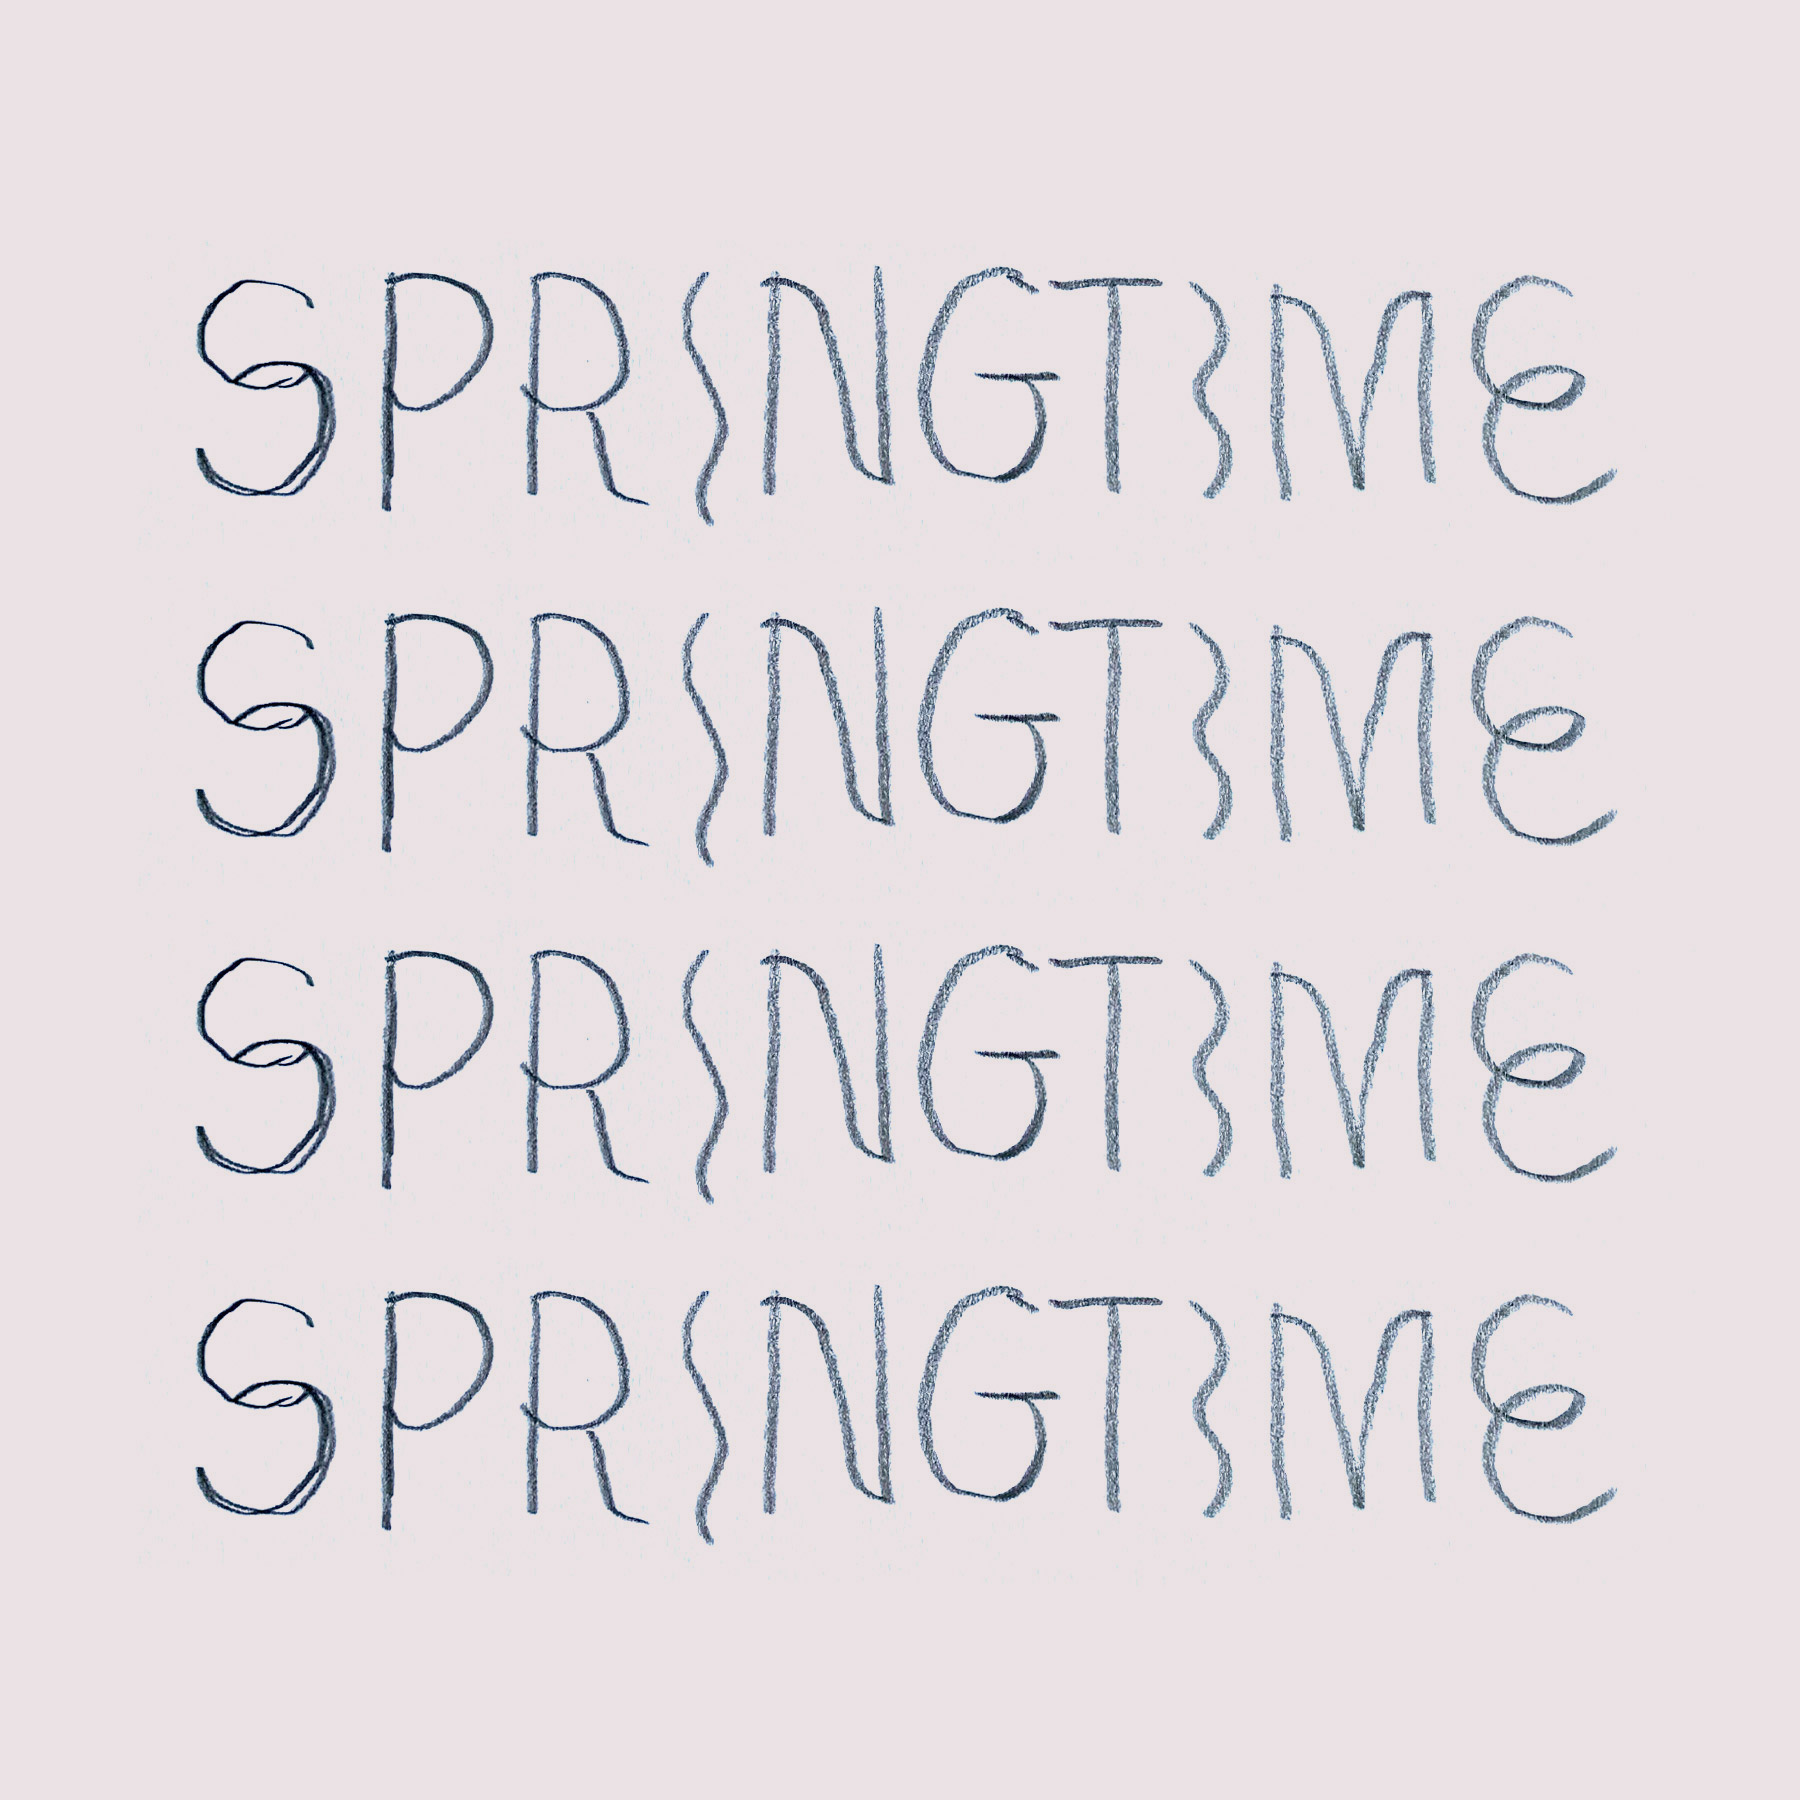 Springtime_Branding_Process2_Sketches